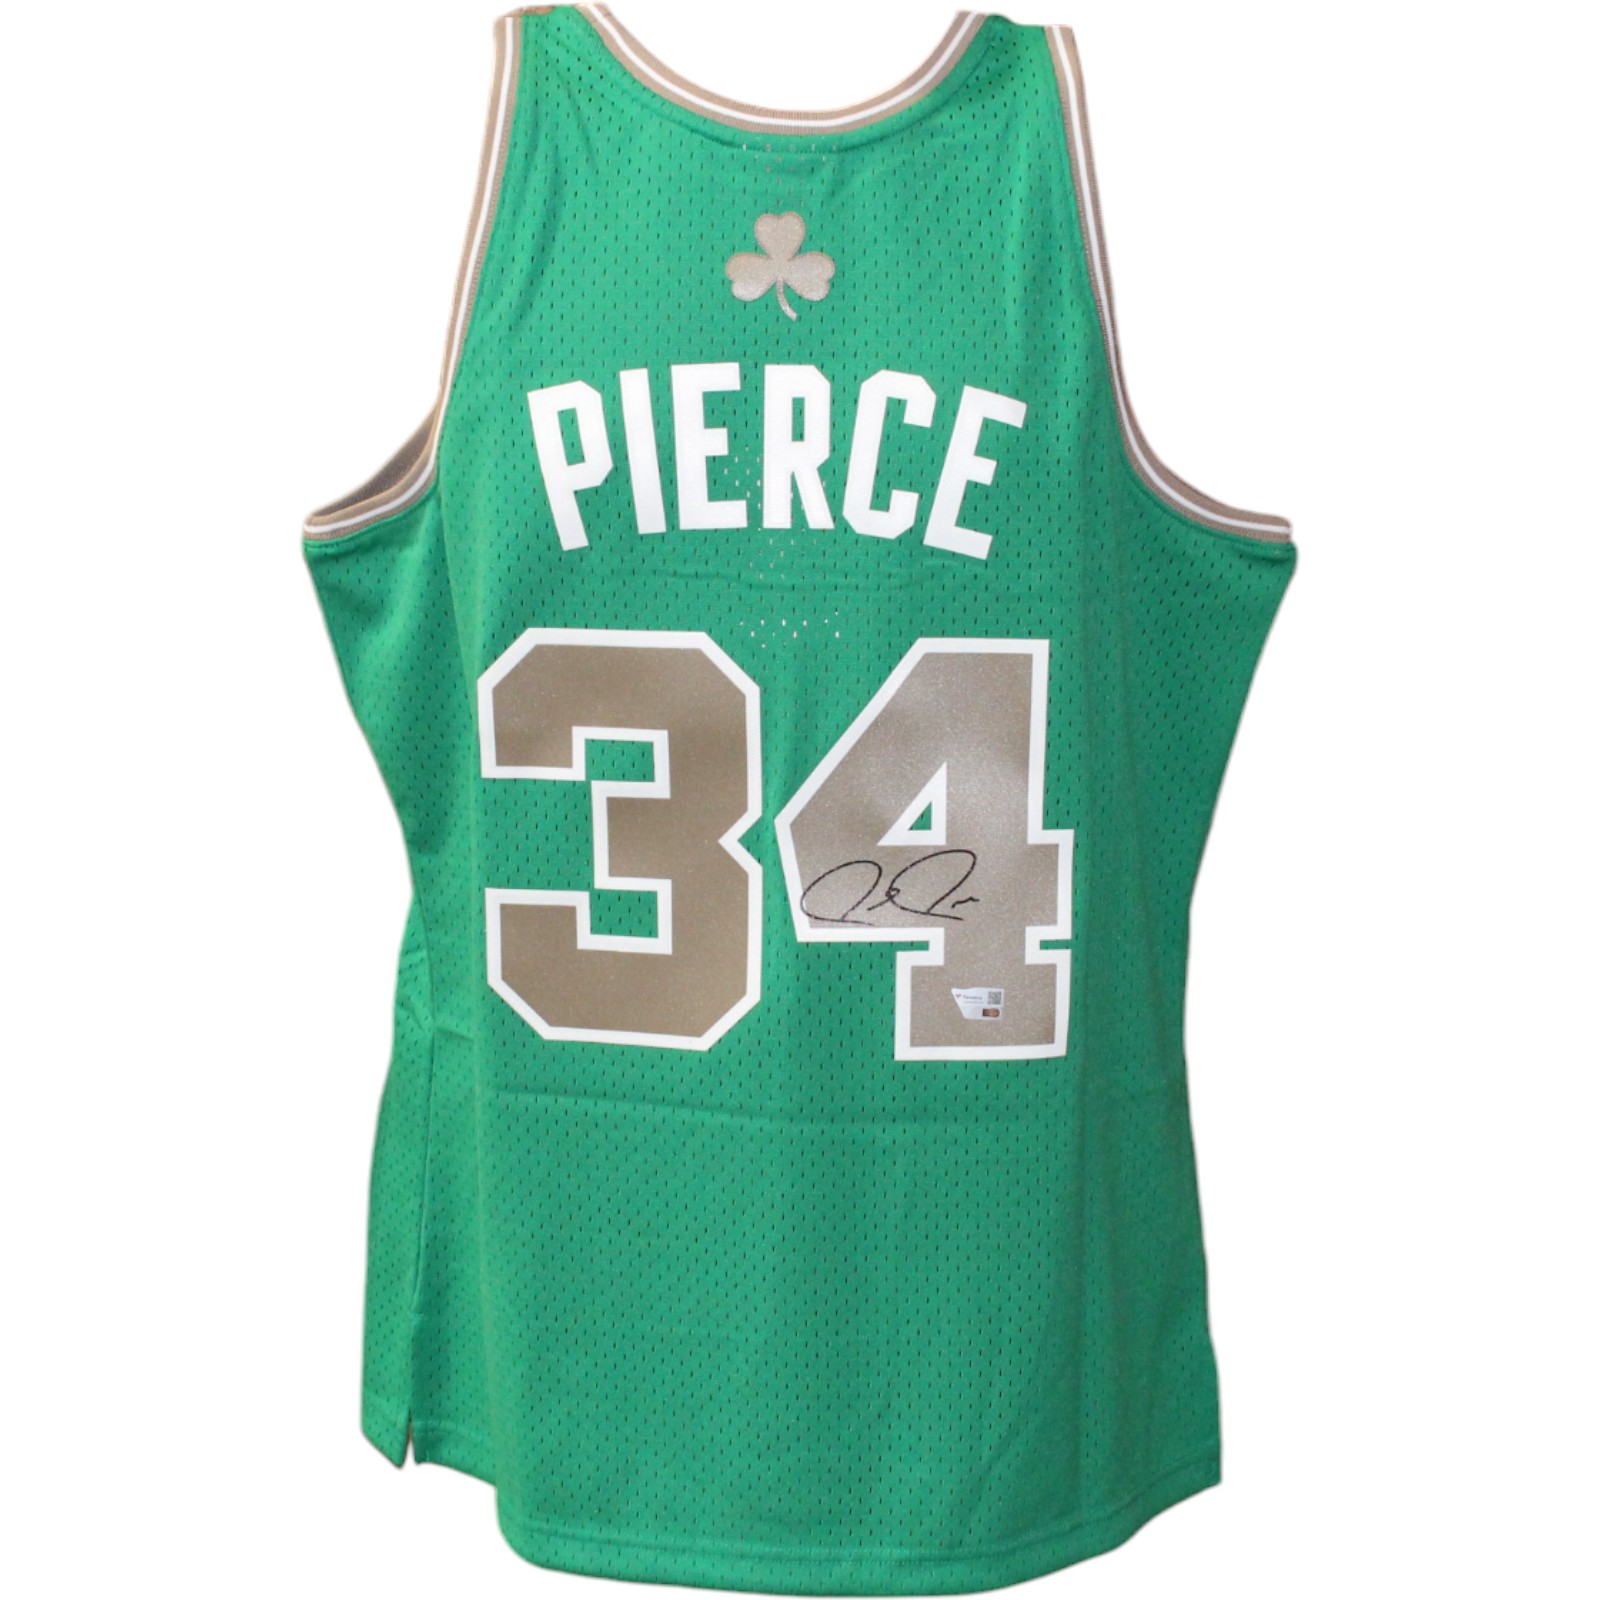 Paul Pierce Signed Boston Celtics Green M&N Jersey Swingman FAN